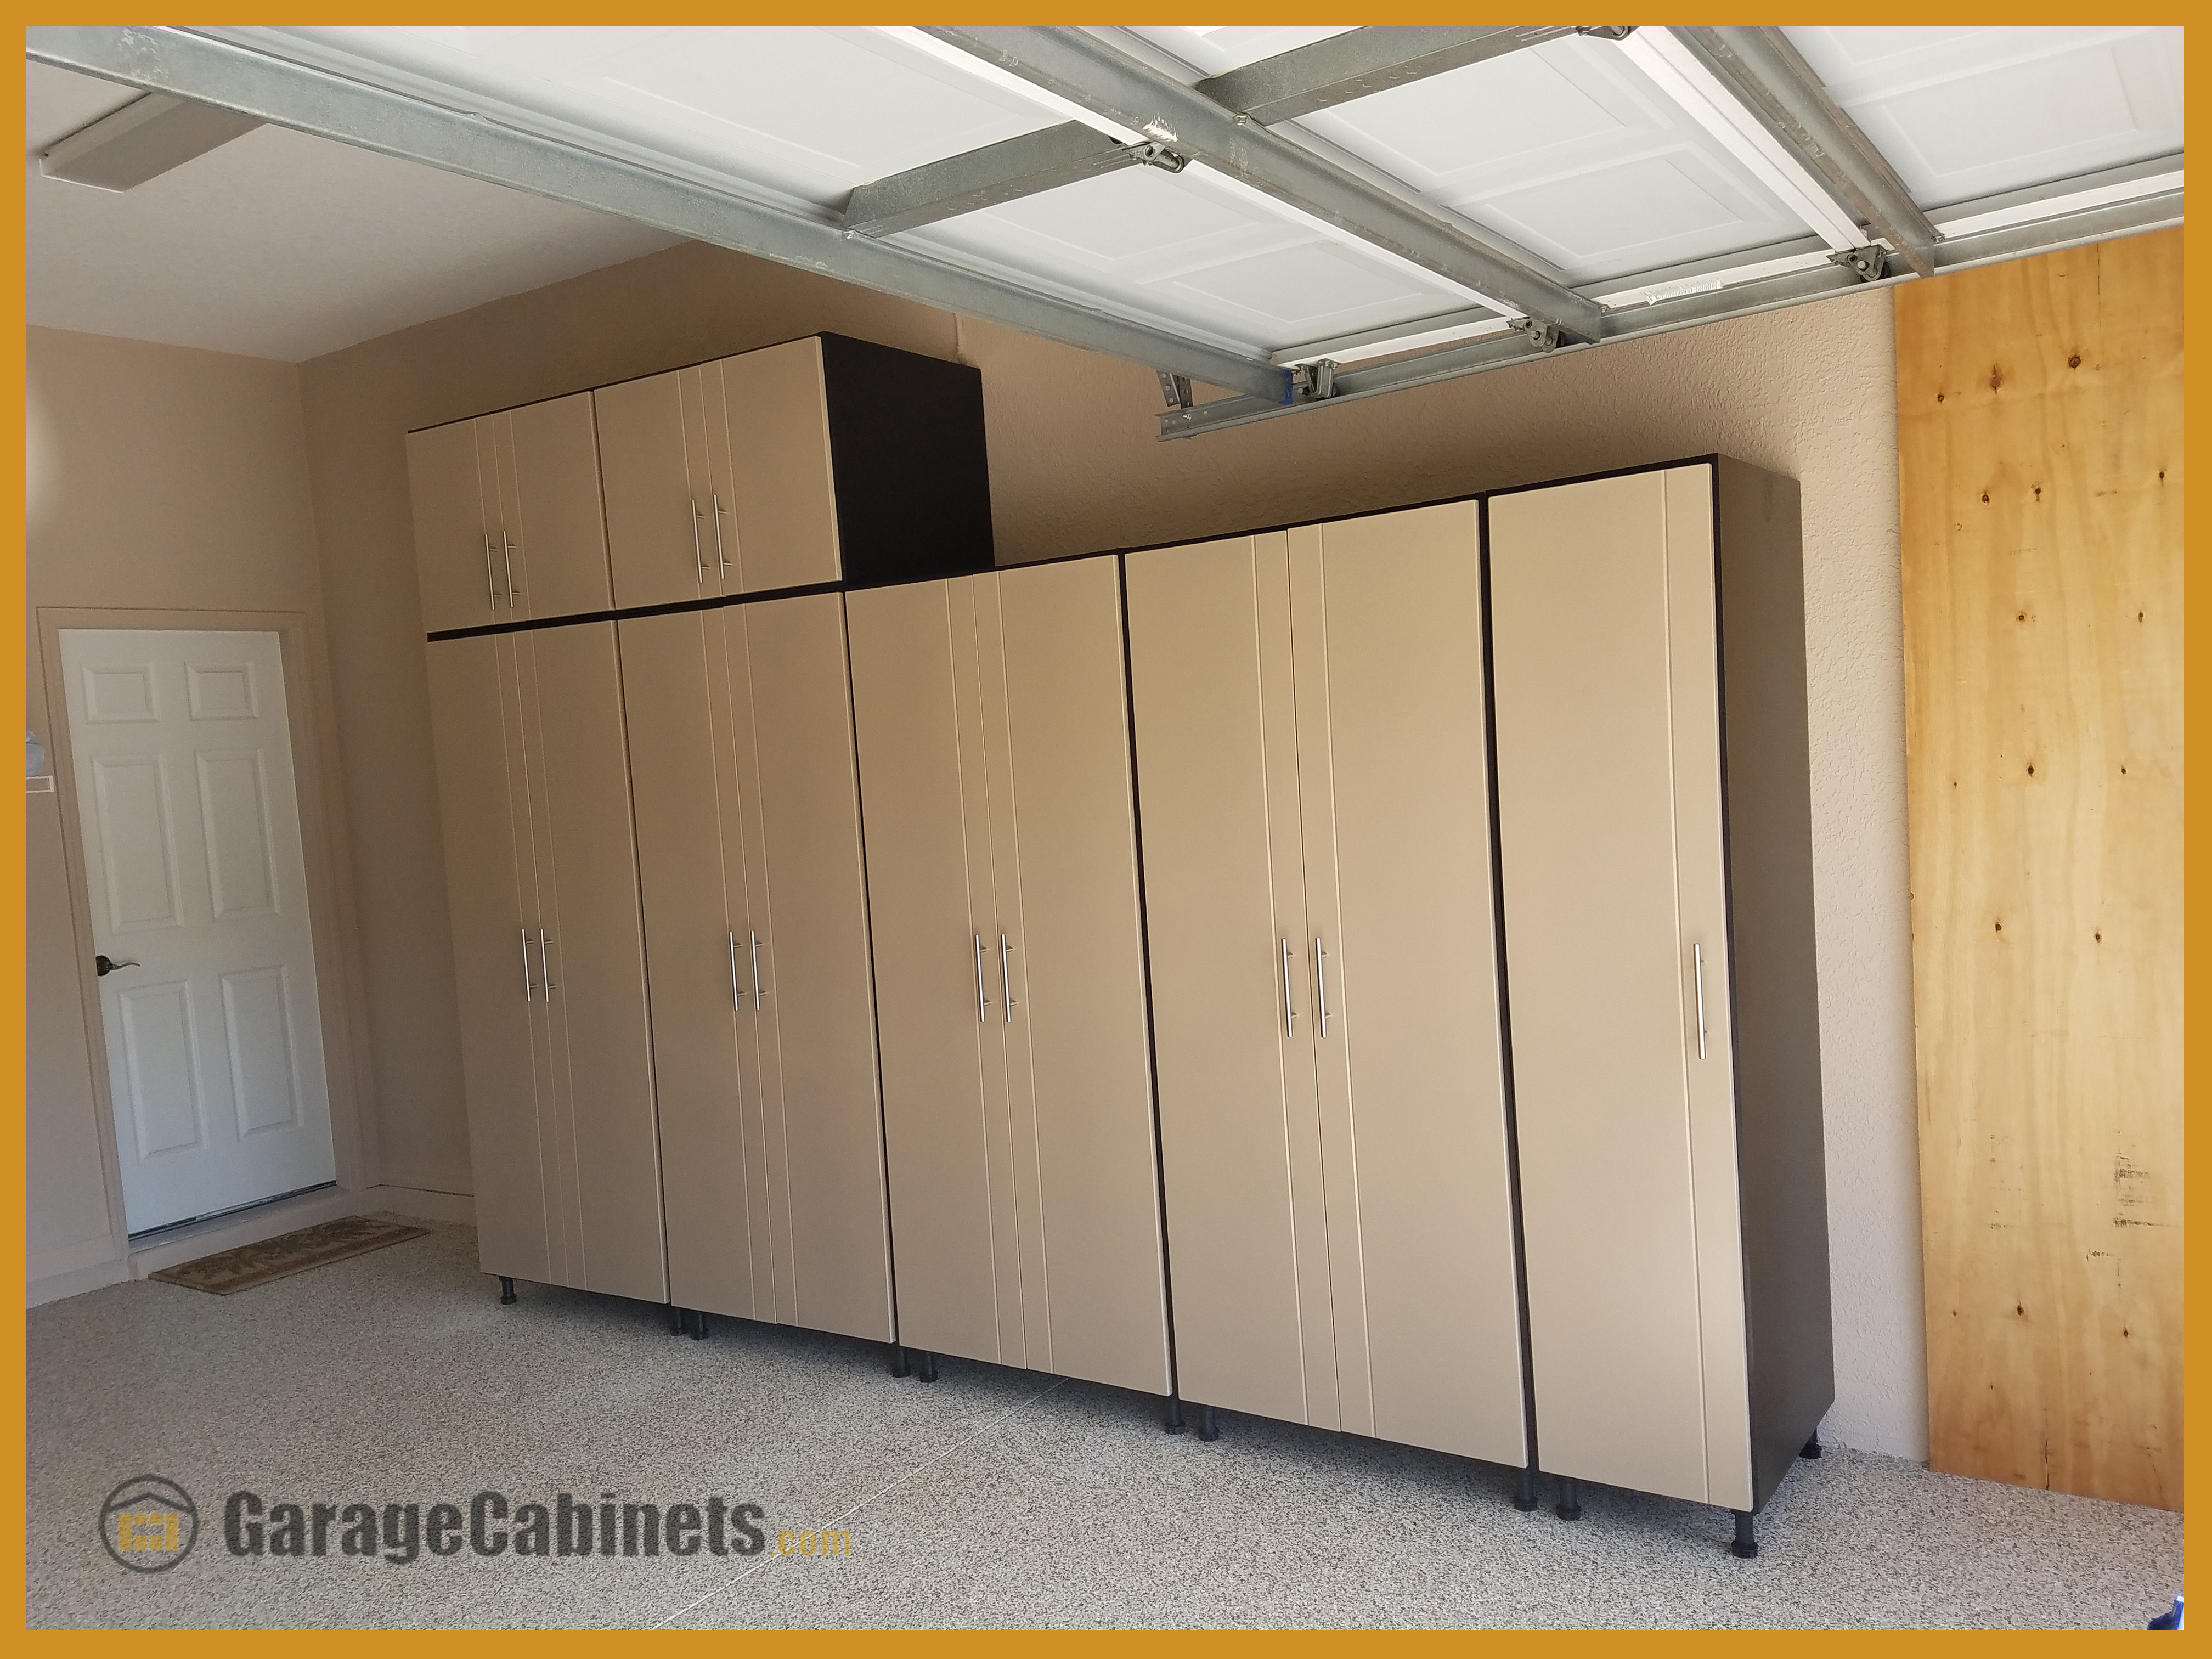 Work Space Garage Cabinets organiza imágenes de garage.